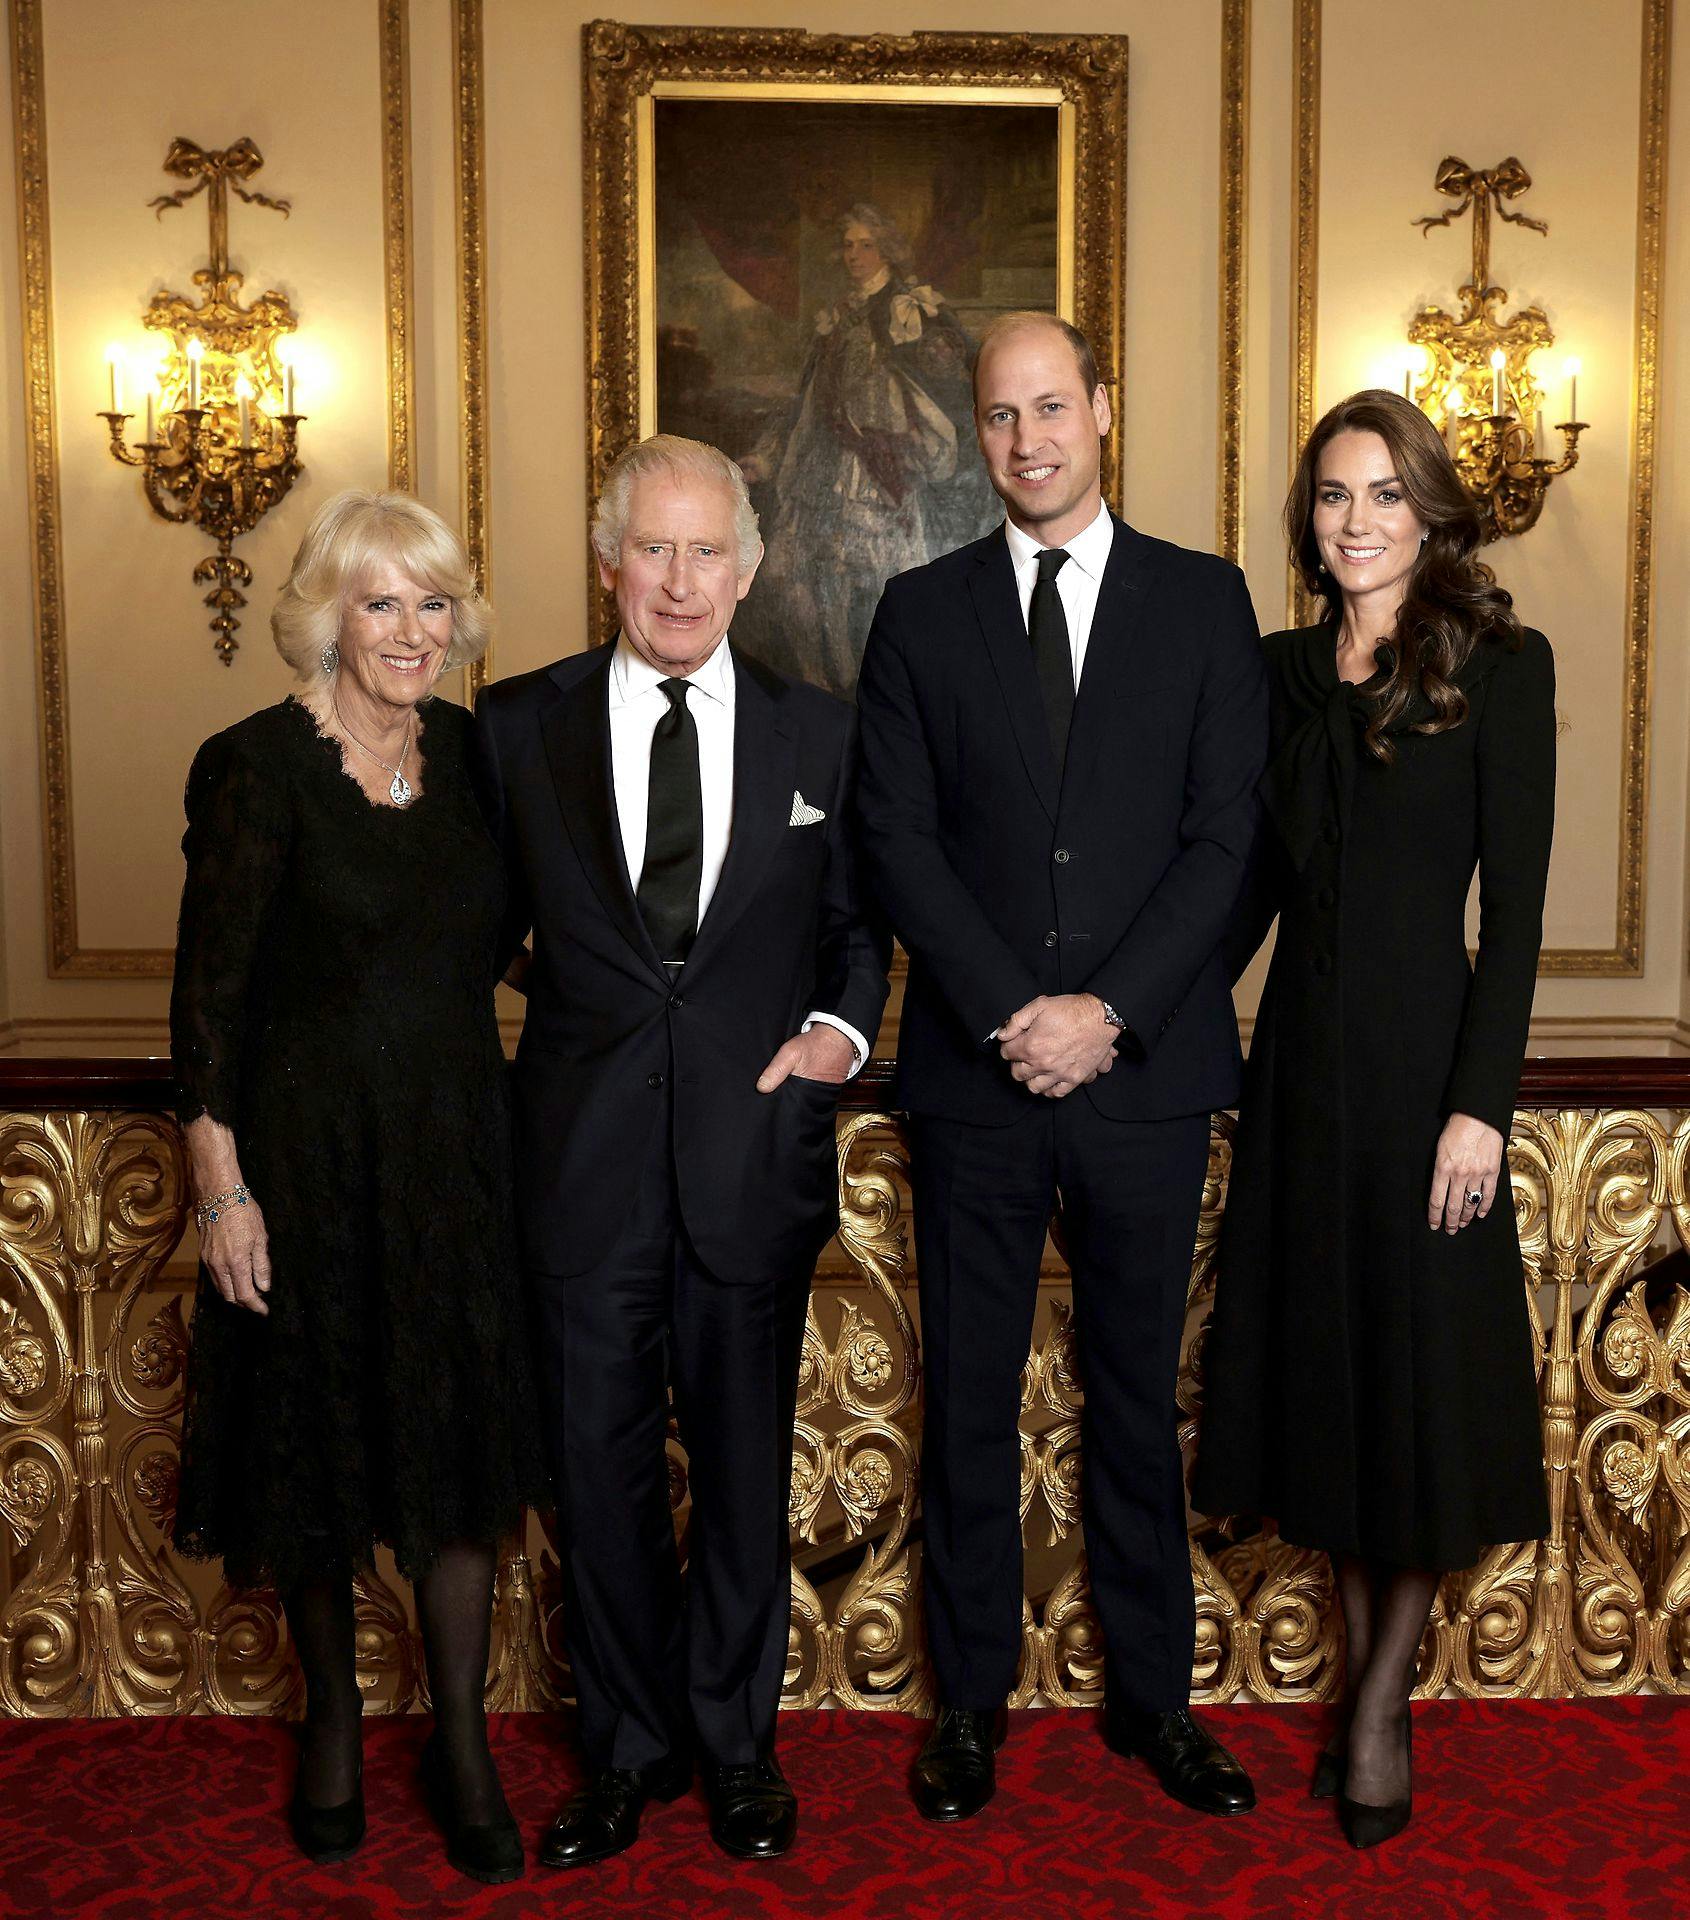 Det nye billede viser kongen og hans tronarving sammen med deres respektive hustruer. Bag dem troner et portræt af kong George III.
